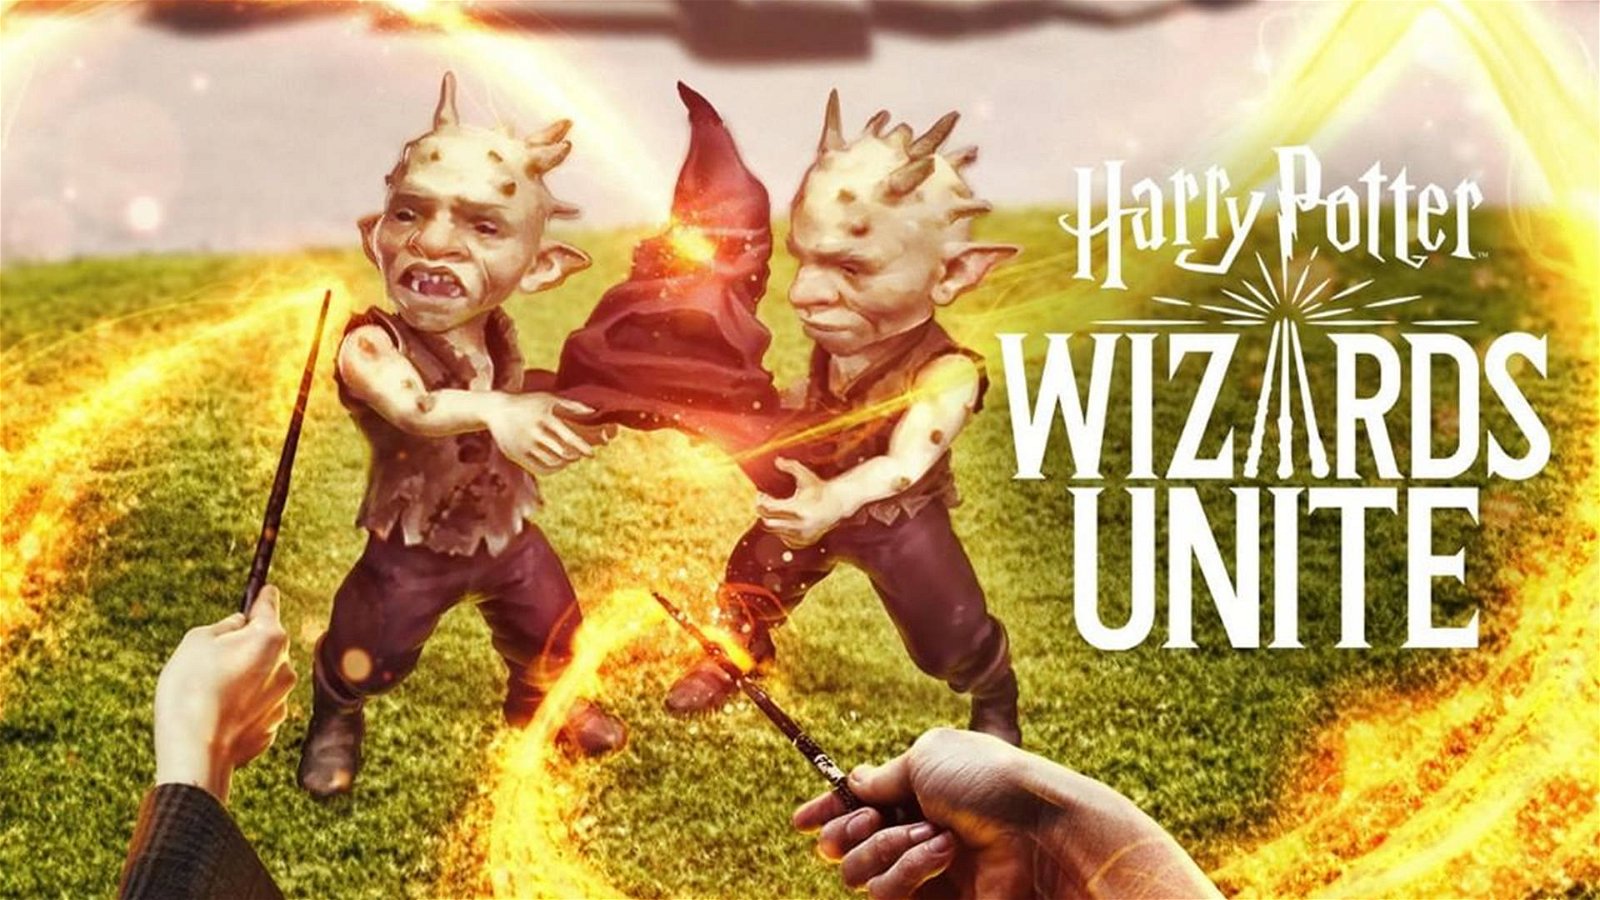 Immagine di Harry Potter Wizards Unite, come scegliere la professione migliore